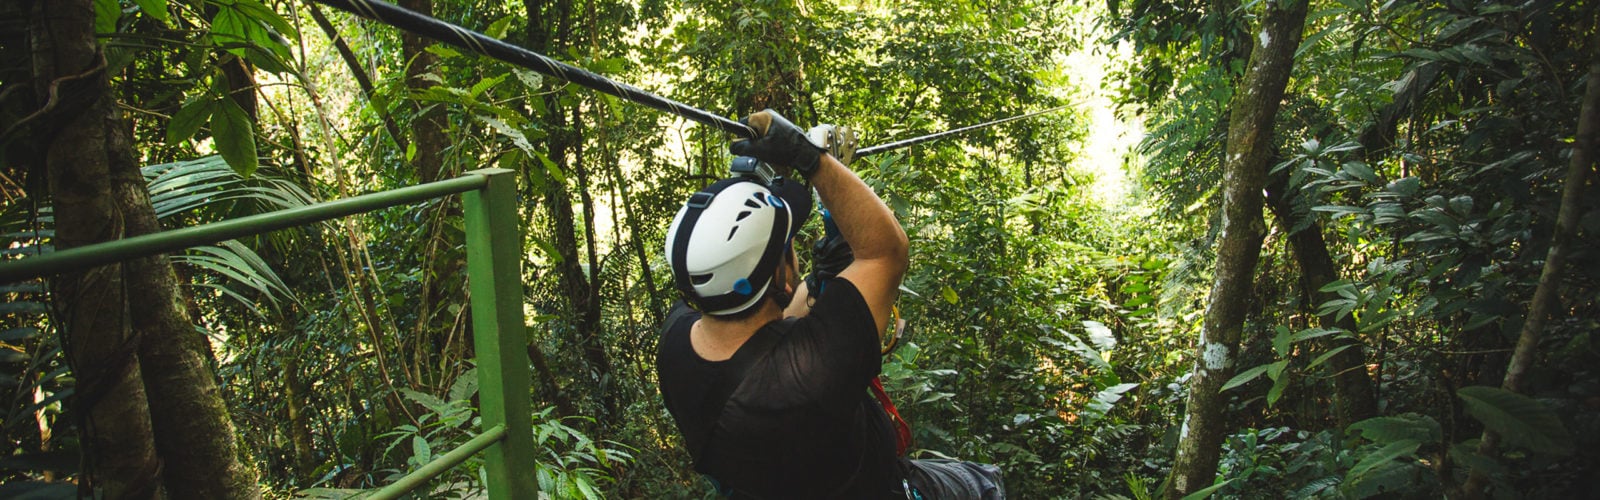 Zip-liner in the Costa Rica rainforest.